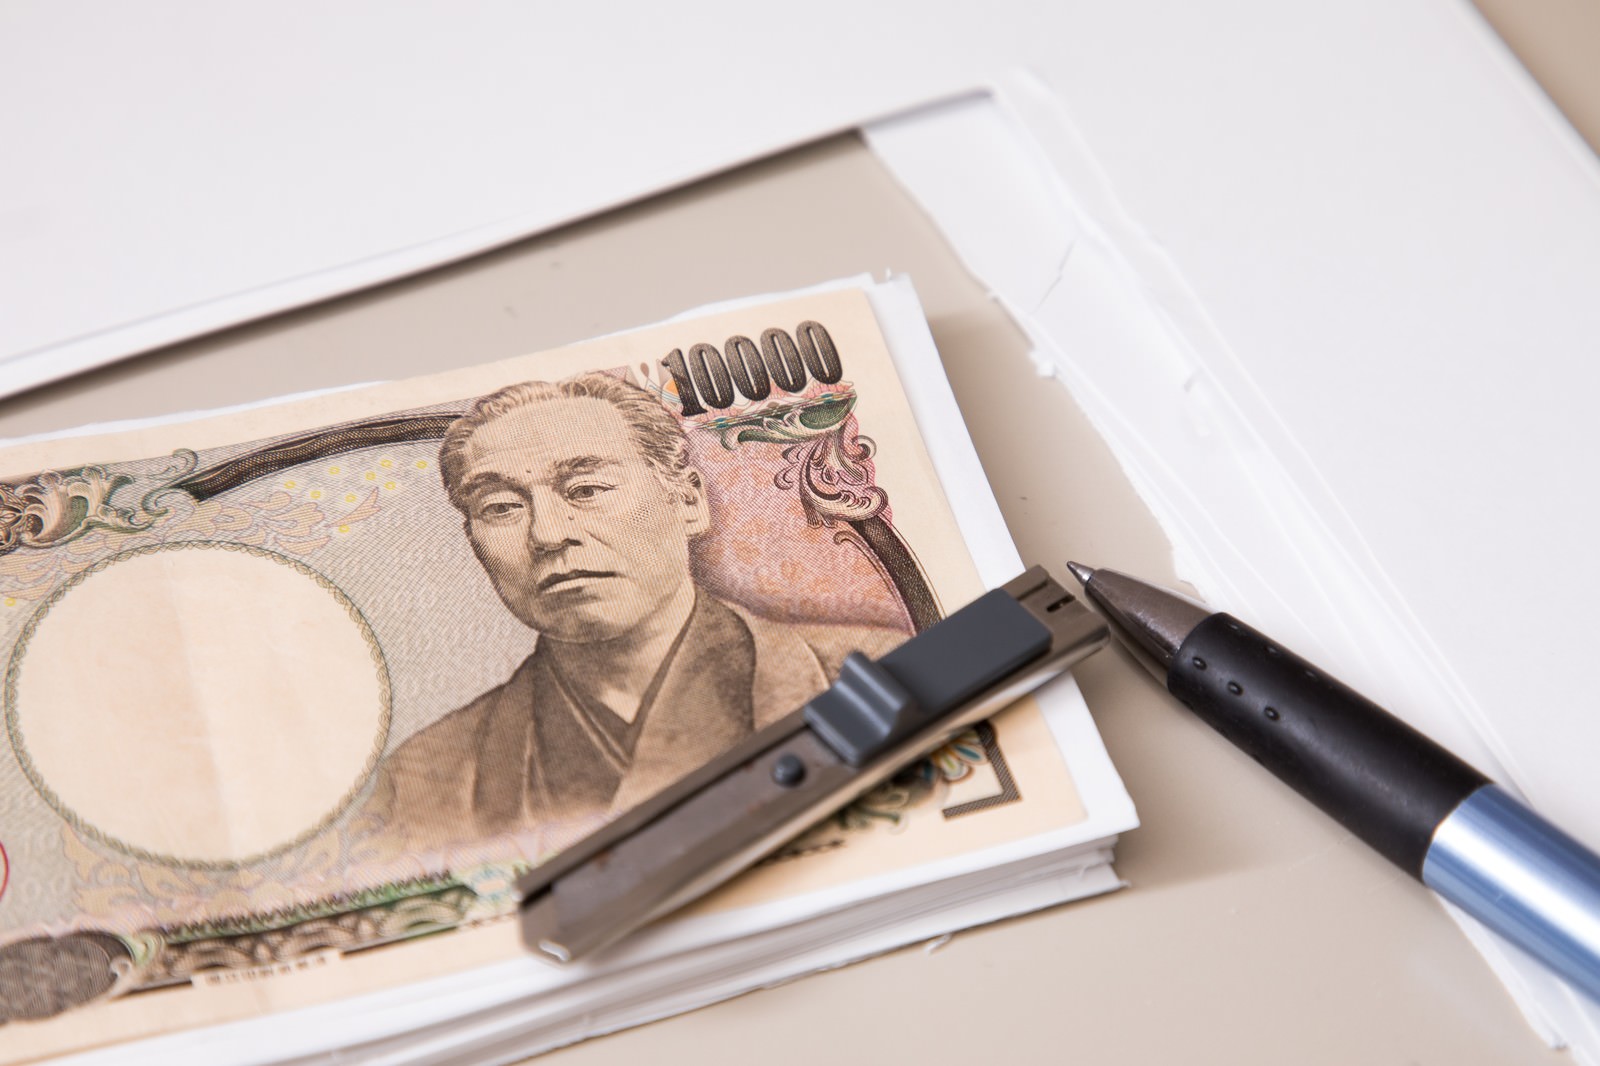 紙幣 一万円 と同じ大きさにカットできました の写真を無料ダウンロード フリー素材 ぱくたそ